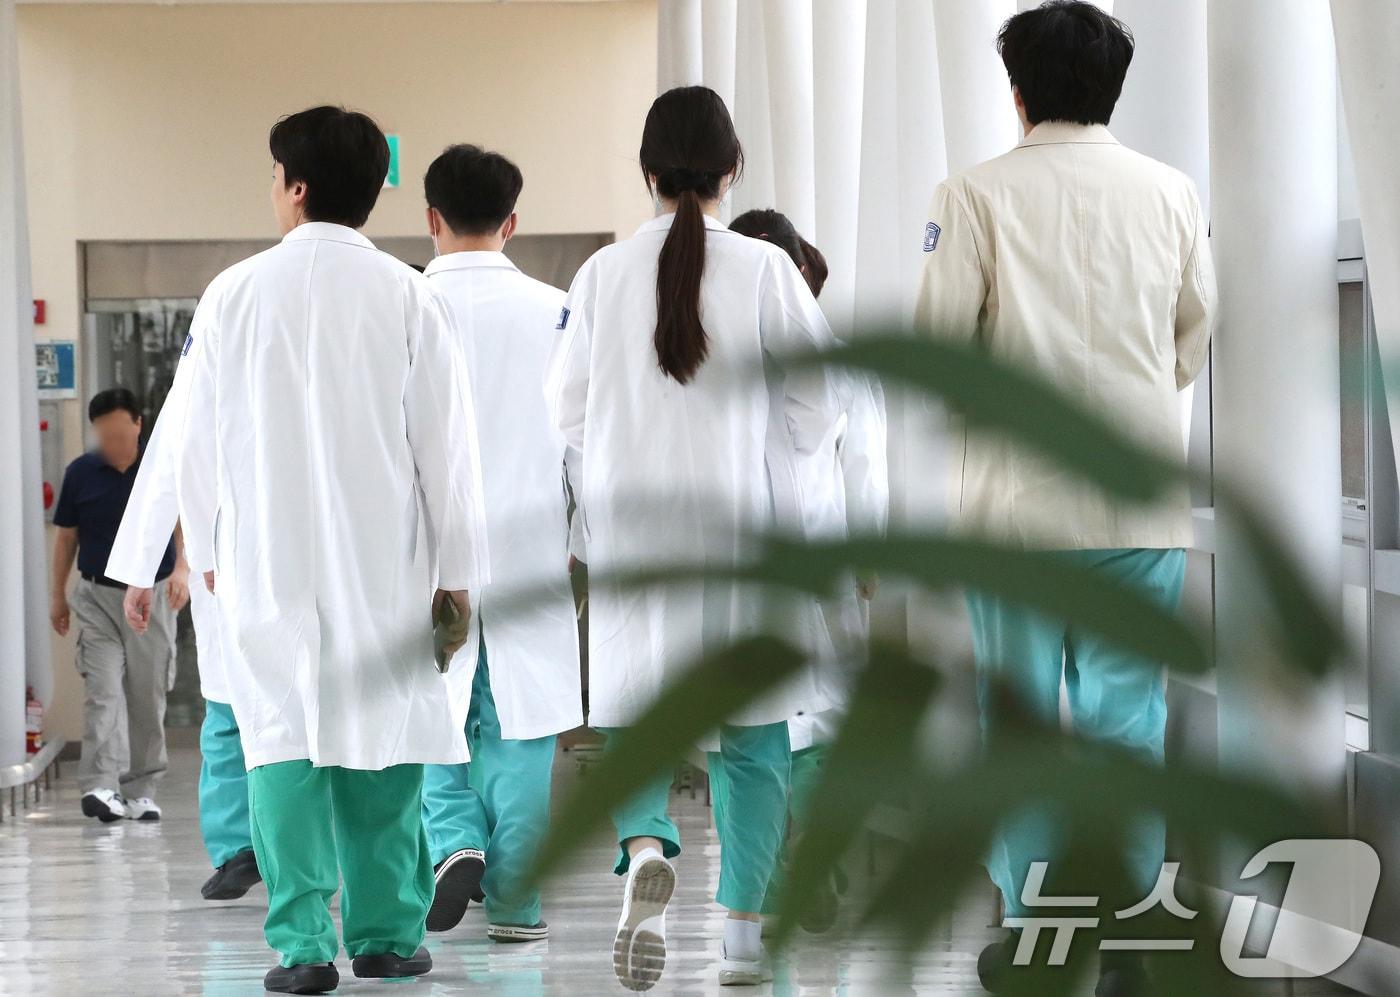 전공의 이탈이 100일을 넘긴 가운데 5일 서울의 한 대학병원에서 의료진이 이동하고 있다. 정부는 병원장에게 내린 사직서 수리금지 명령과 전공의에게 부과한 진료유지명령 그리고 업무개시명령을 철회하는 동시에 전공의가 복귀하면 행정처분 절차를 중단하겠다고 지난 4일 밝혔다. 2024.6.5/뉴스1 ⓒ News1 임세영 기자